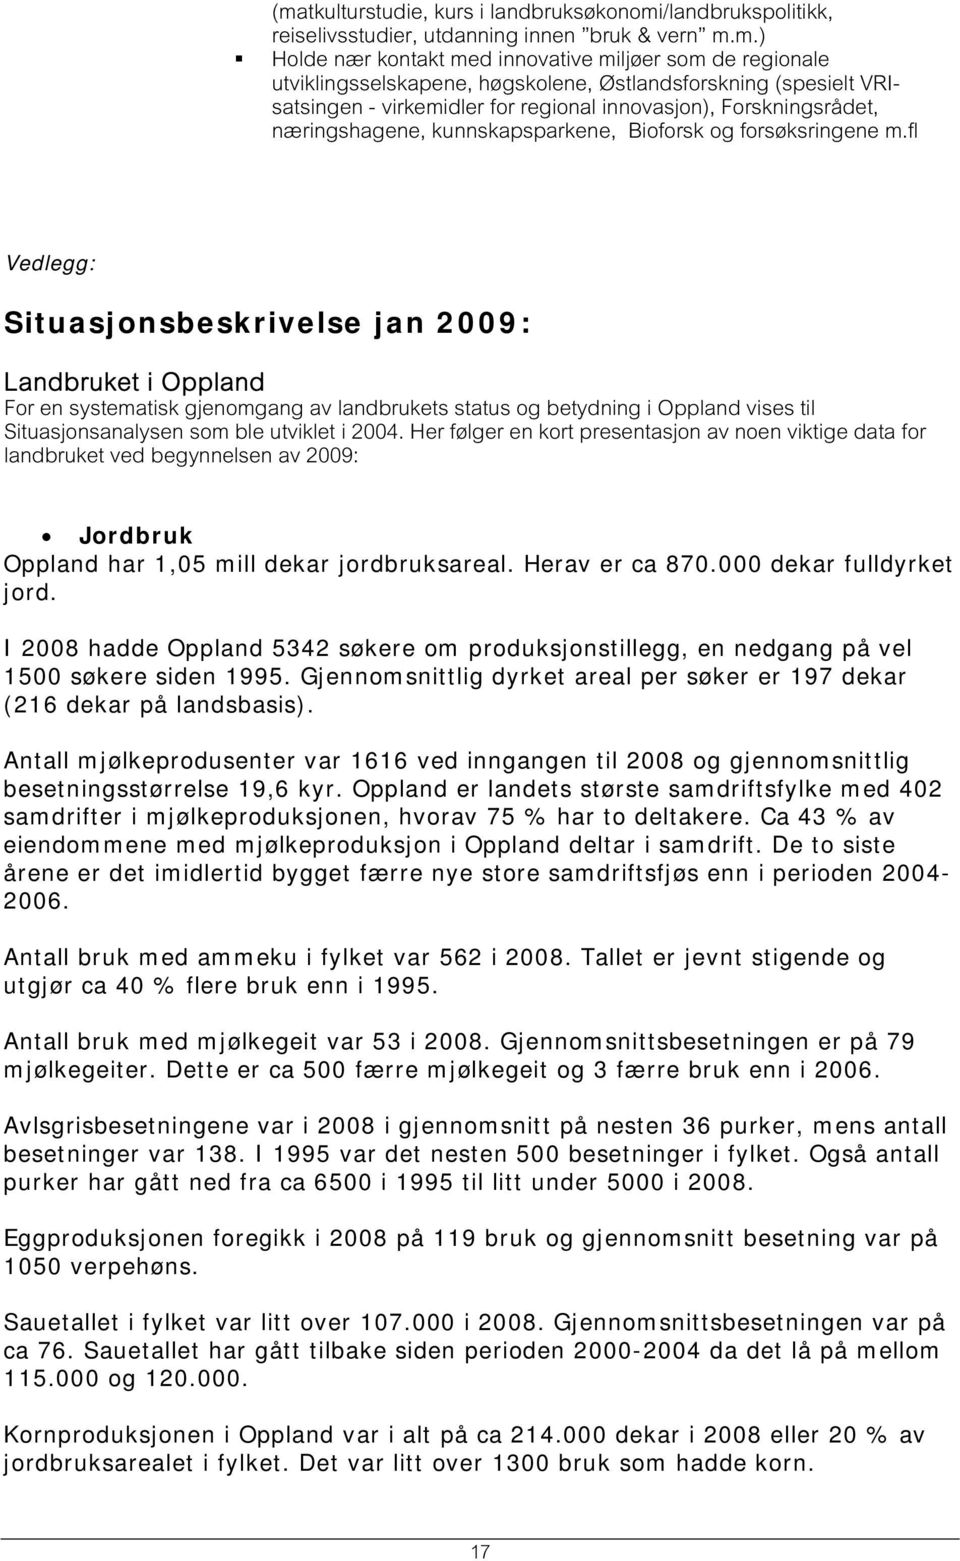 fl Vedlegg: Situasjonsbeskrivelse jan 2009: Landbruket i Oppland For en systematisk gjenomgang av landbrukets status og betydning i Oppland vises til Situasjonsanalysen som ble utviklet i 2004.